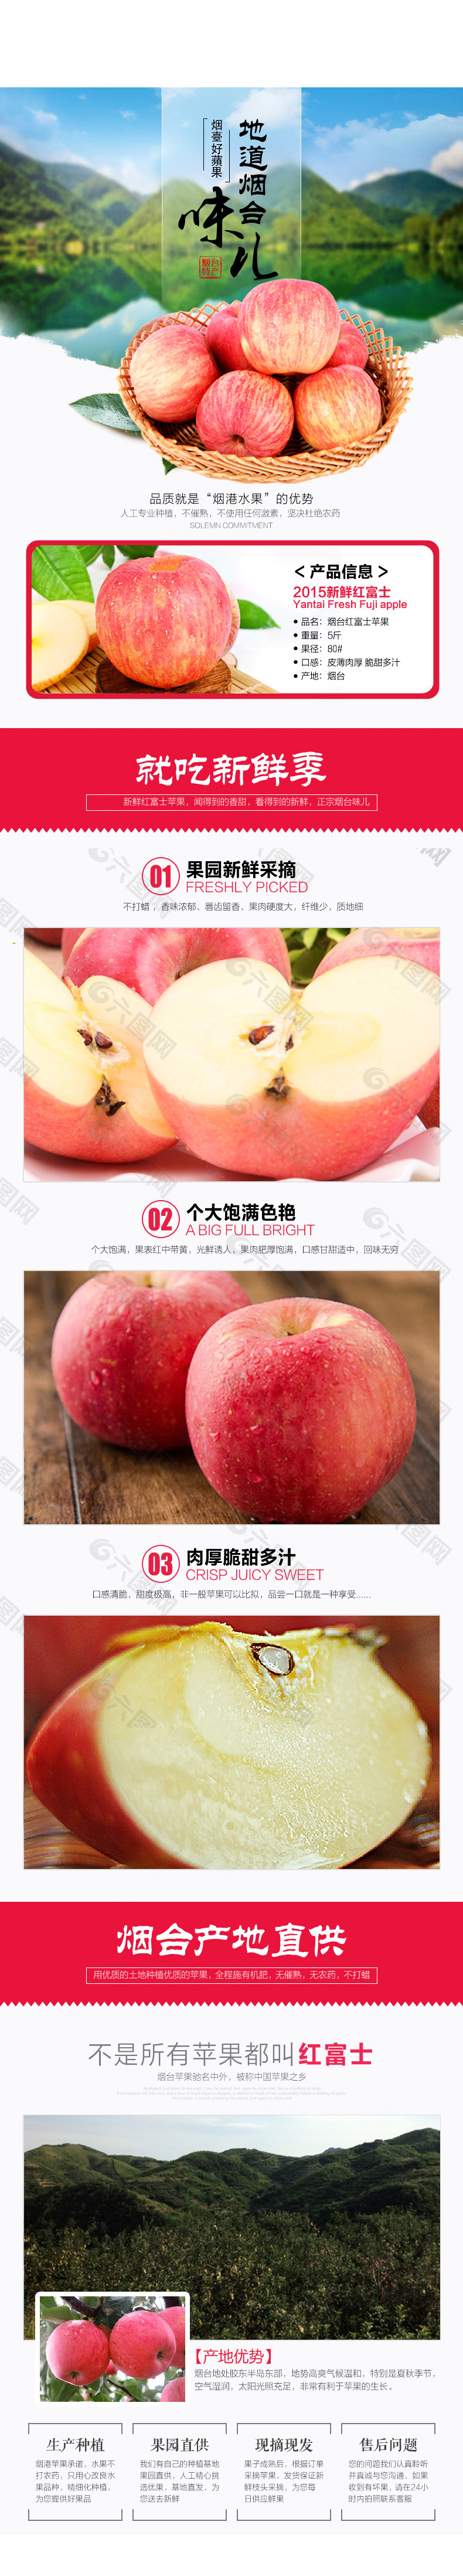 淘宝红富士苹果水果详情页